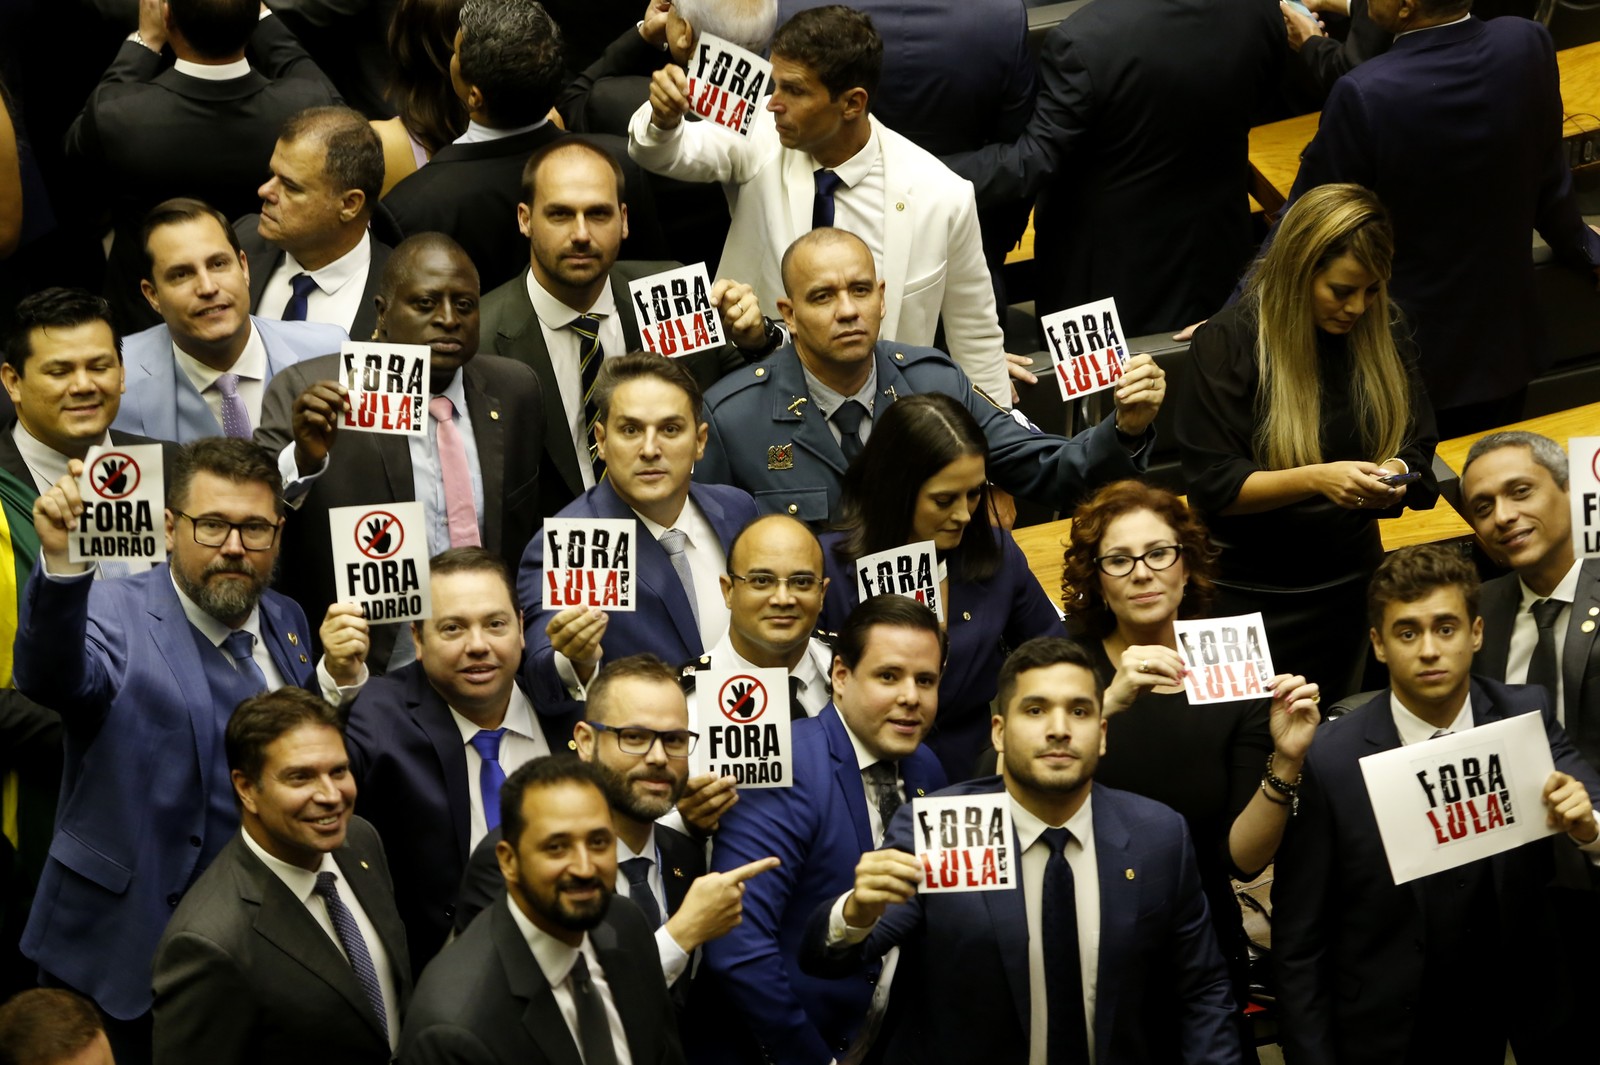 Bancada de deputados bolsonasristas protestam contra o governo Lula.  — Foto: Cristiano Mariz